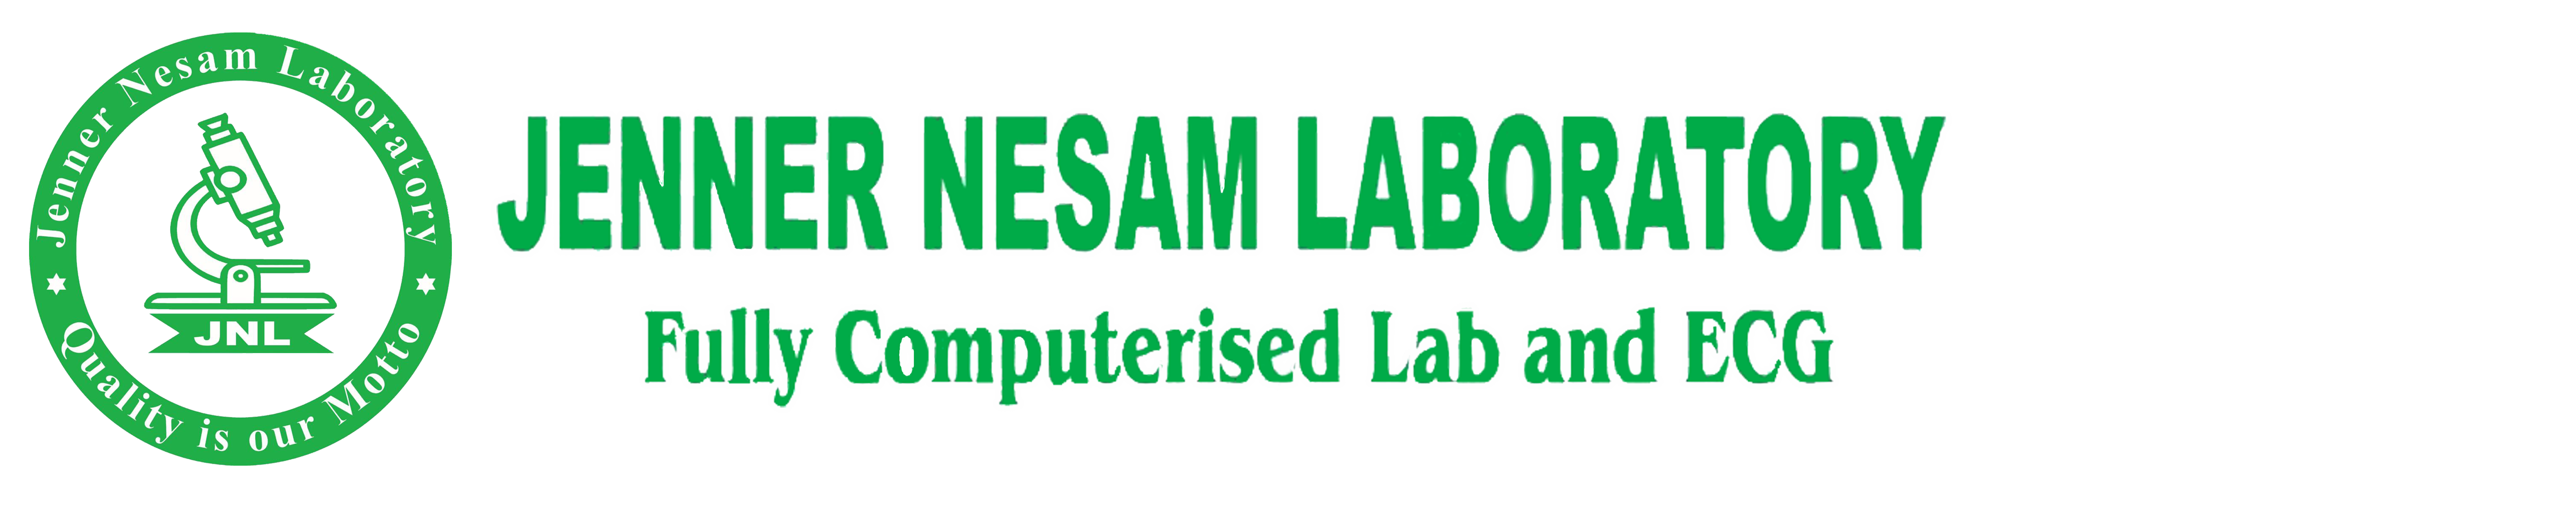 Jenner Nesam Laboratory 